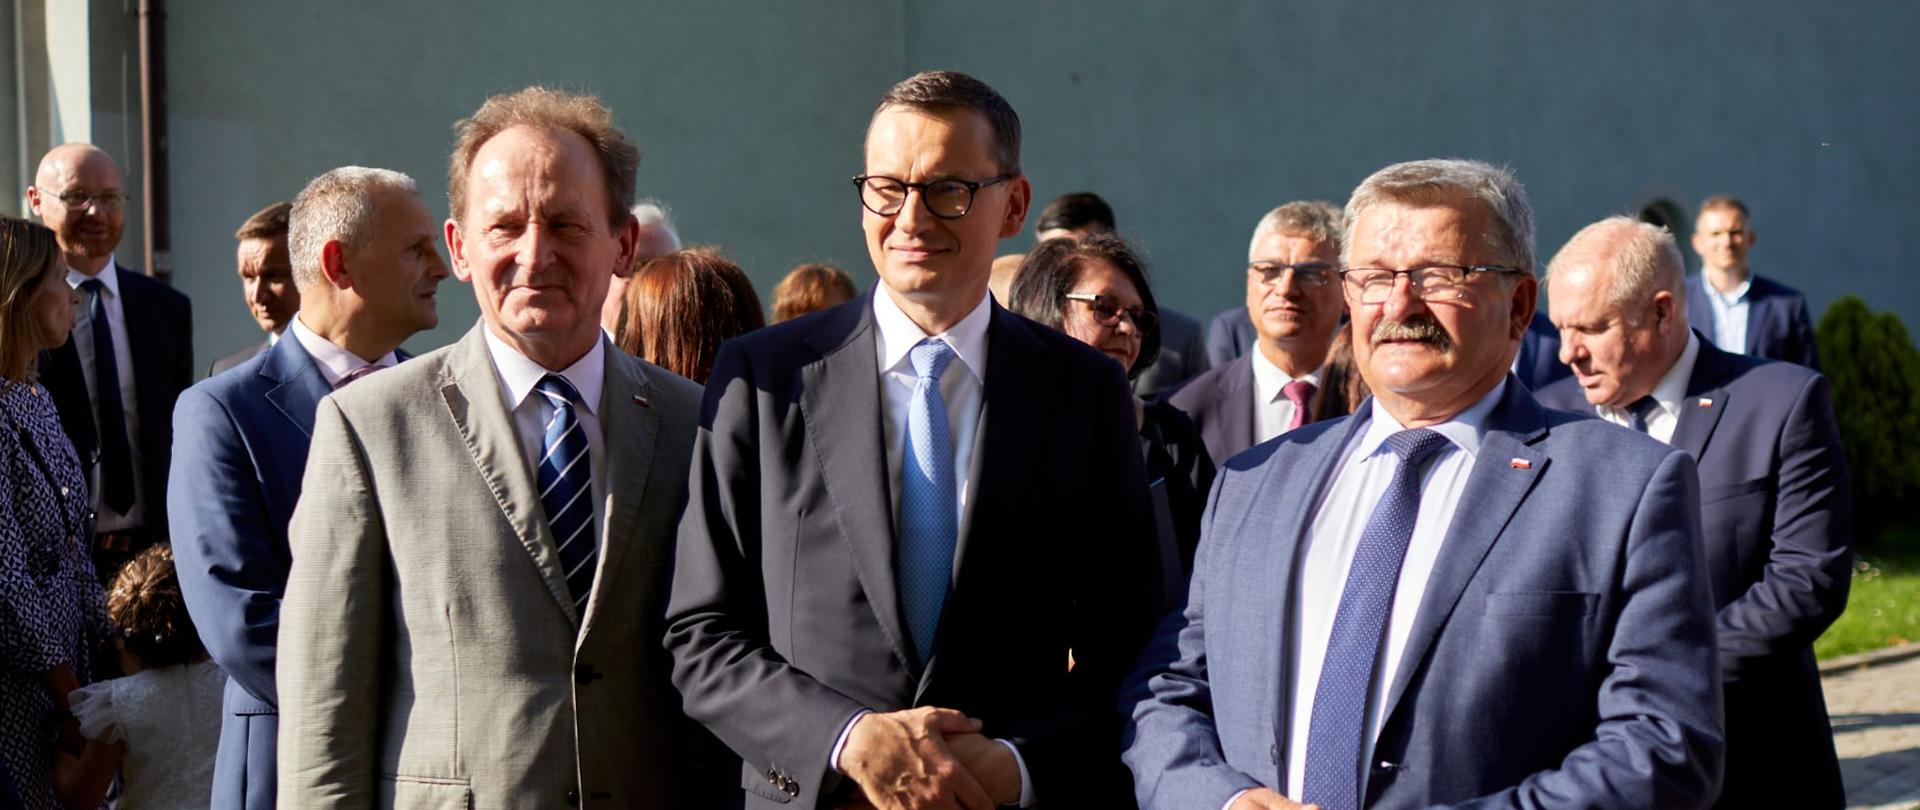 Trzech polityków - premier Morawiecki w towarzystwie dwóch mężczyzn w garniturach